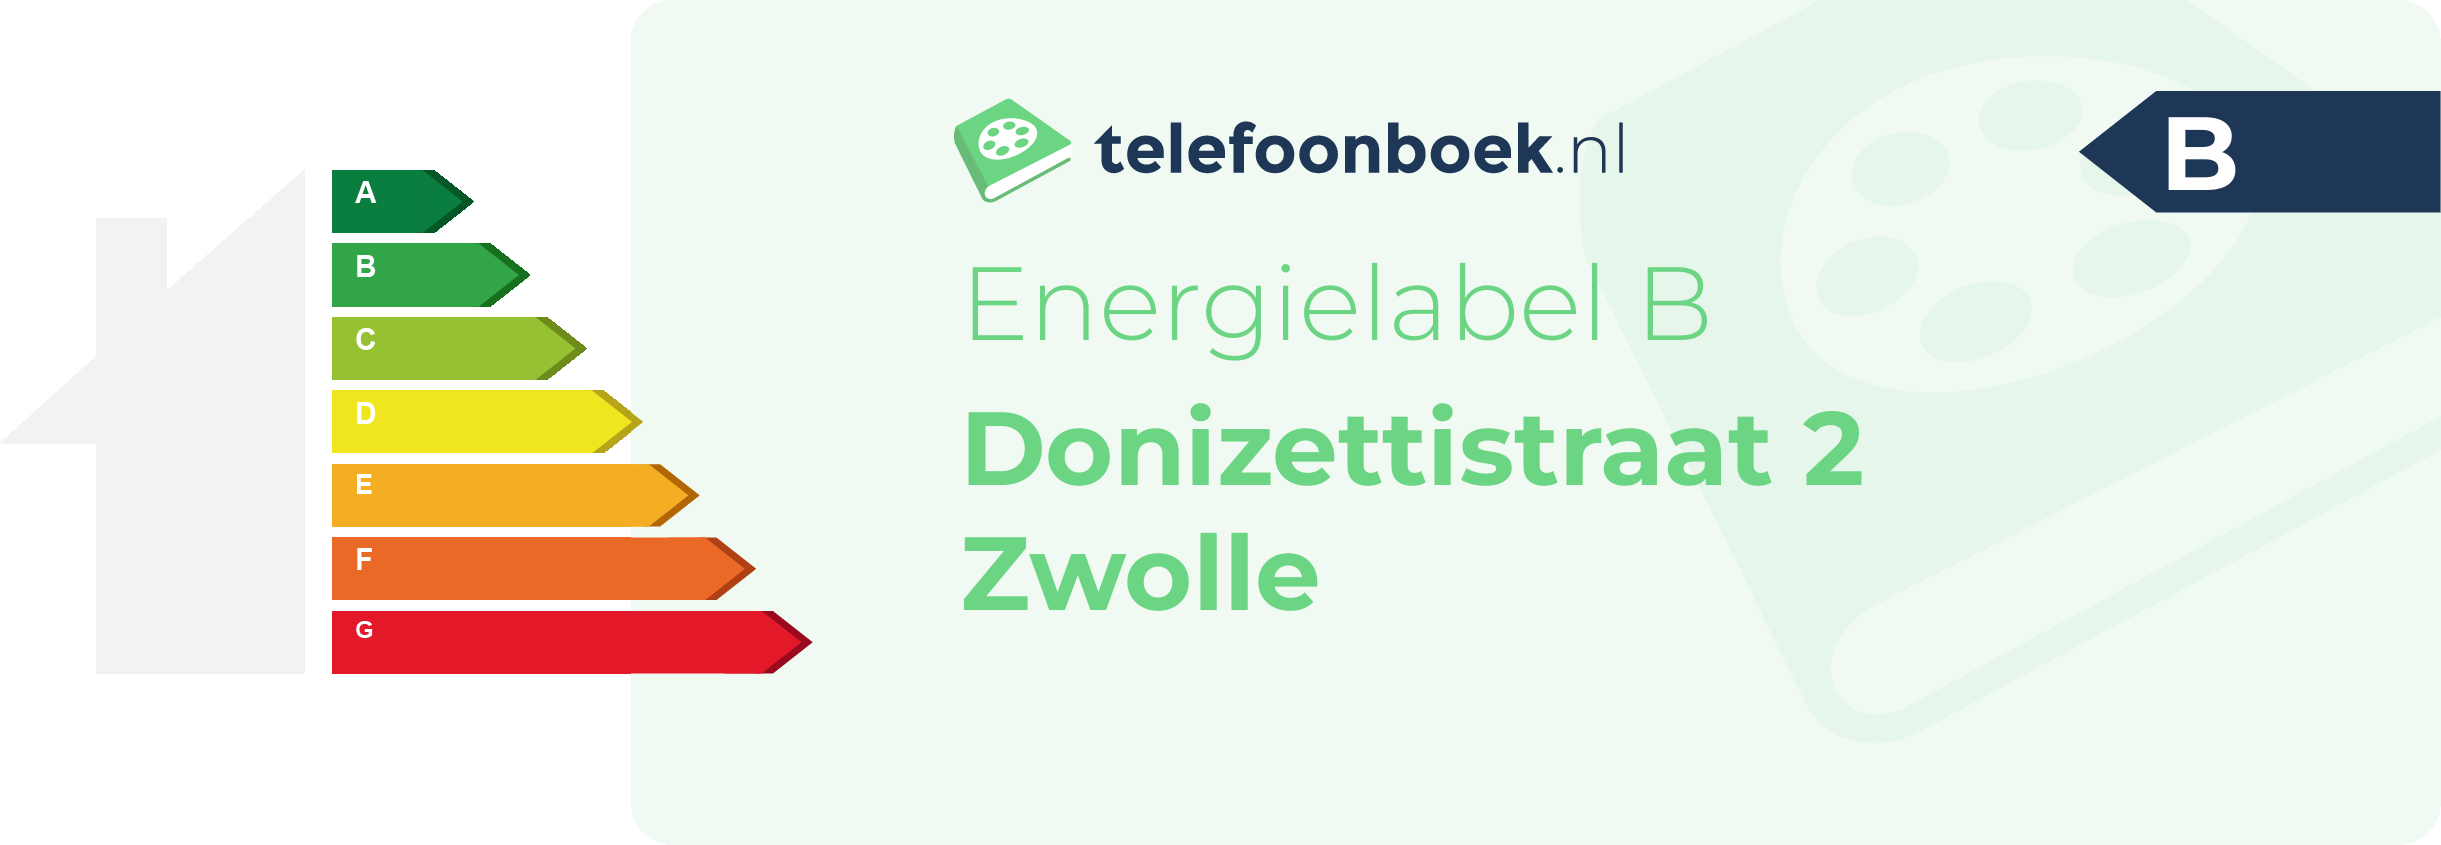 Energielabel Donizettistraat 2 Zwolle